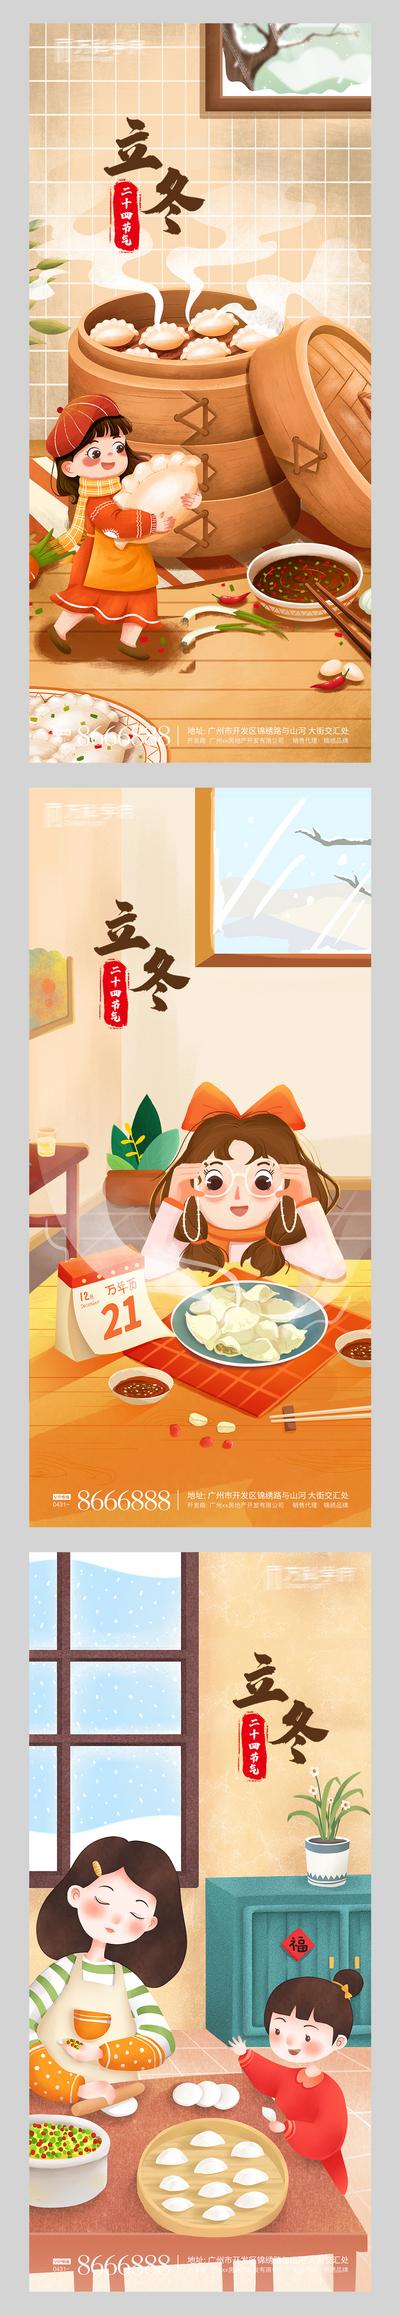 南门网 海报  二十四节气 立冬  饺子 插画  系列